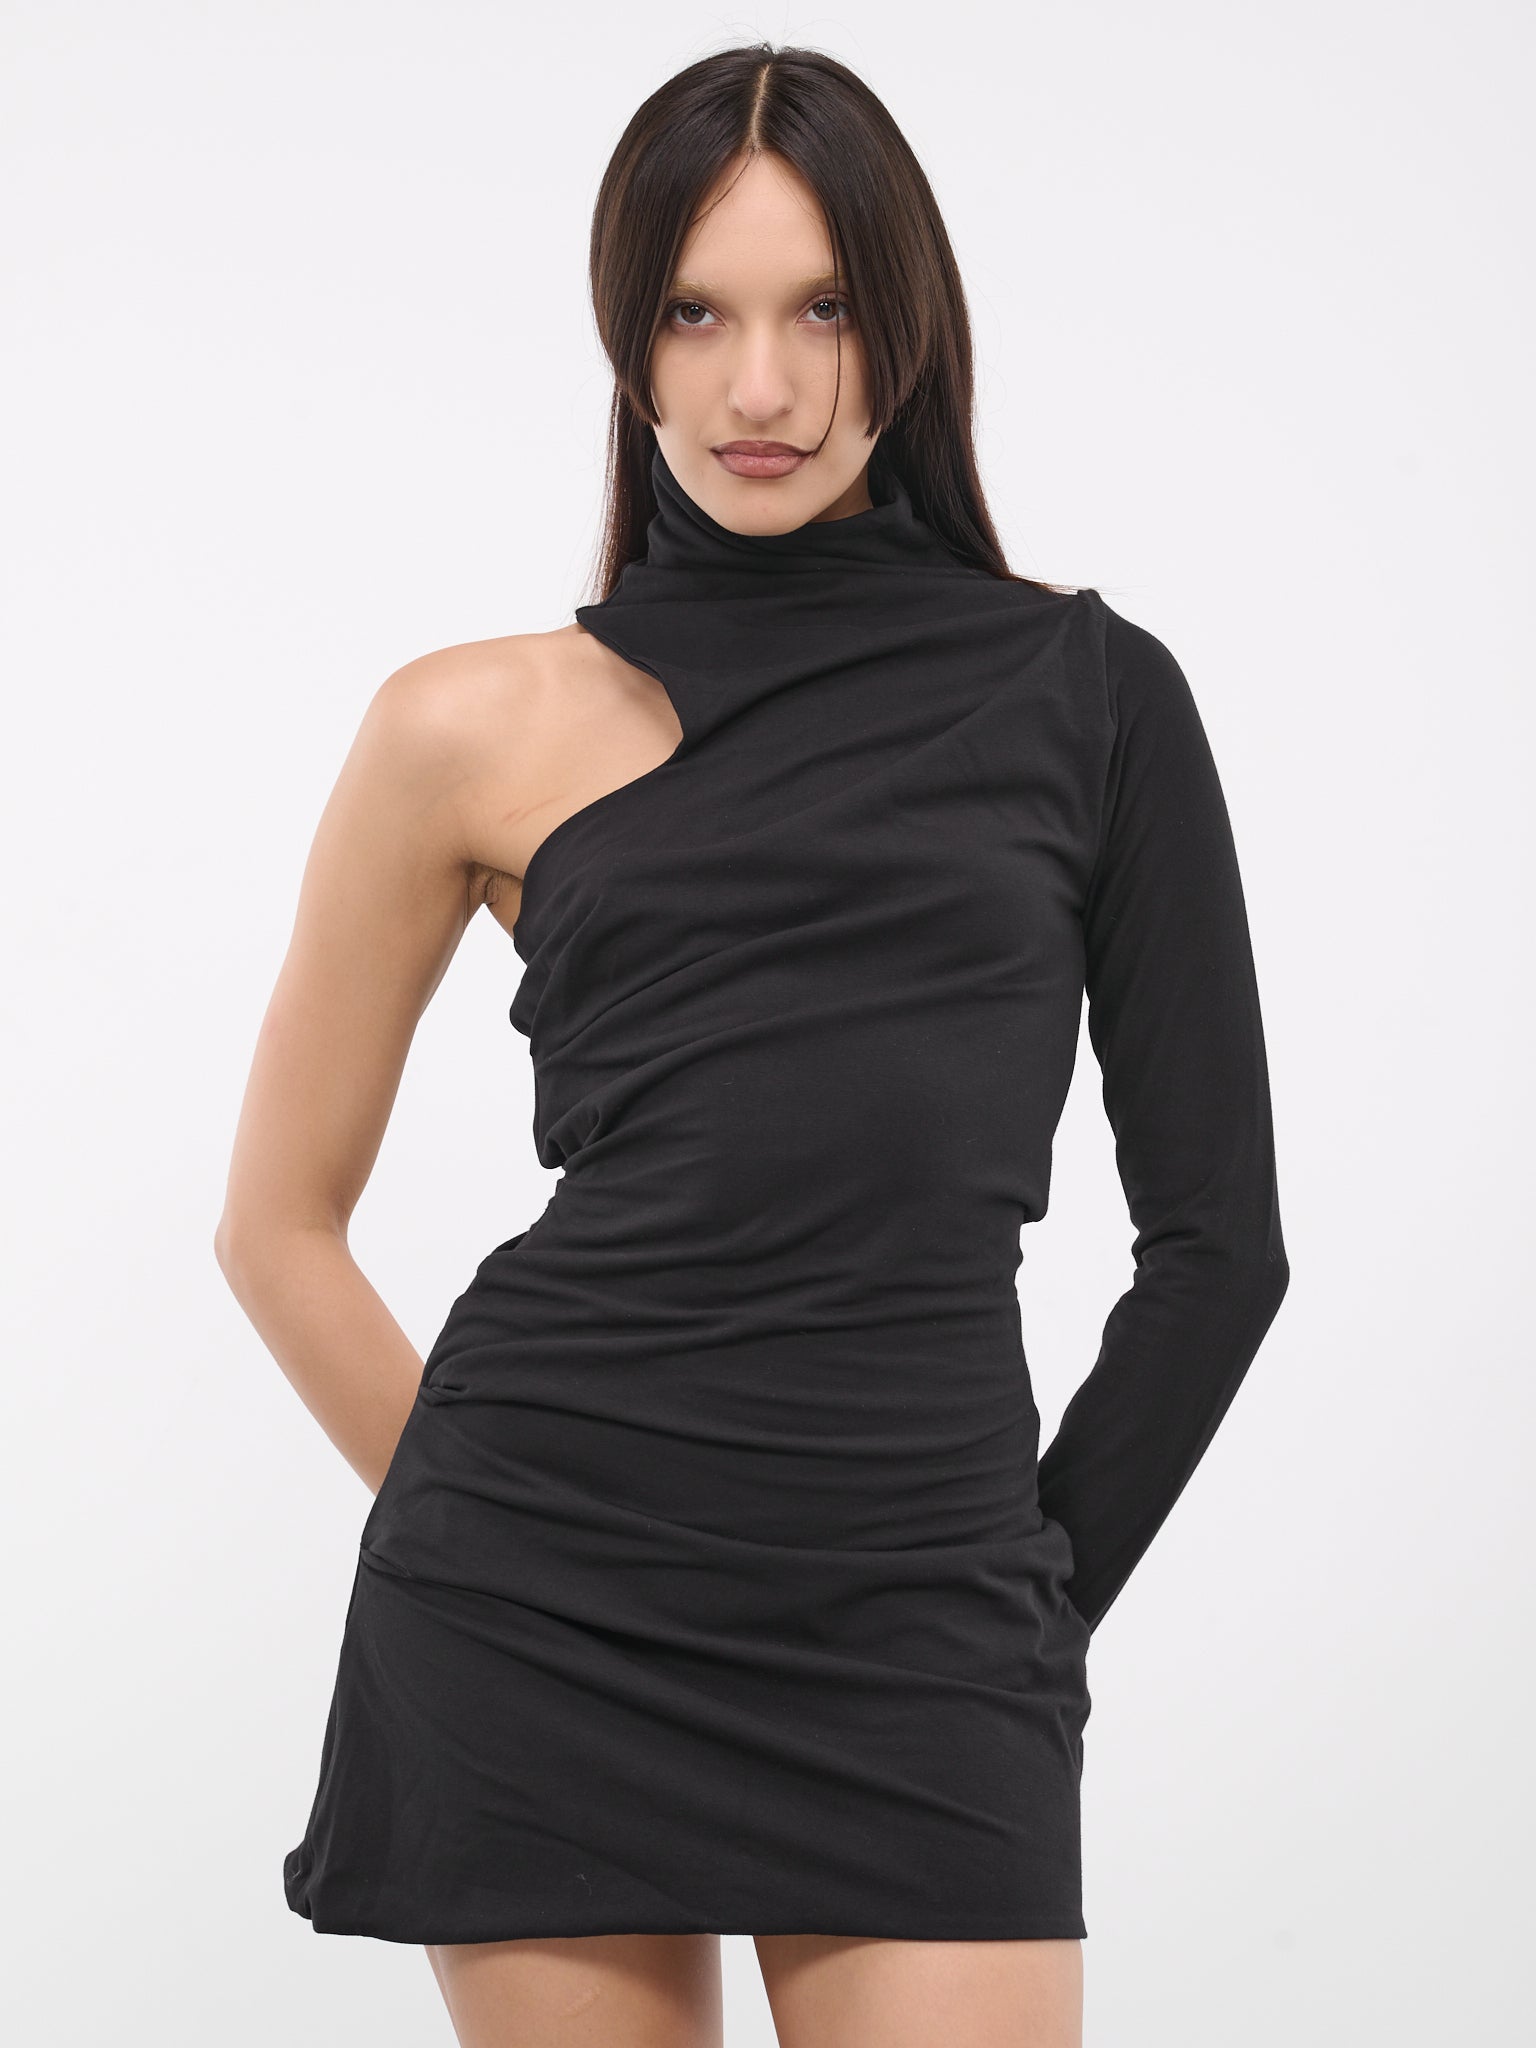 Dali's Drape Dress (DALIS-DRAPE-DRESS-BLACK)